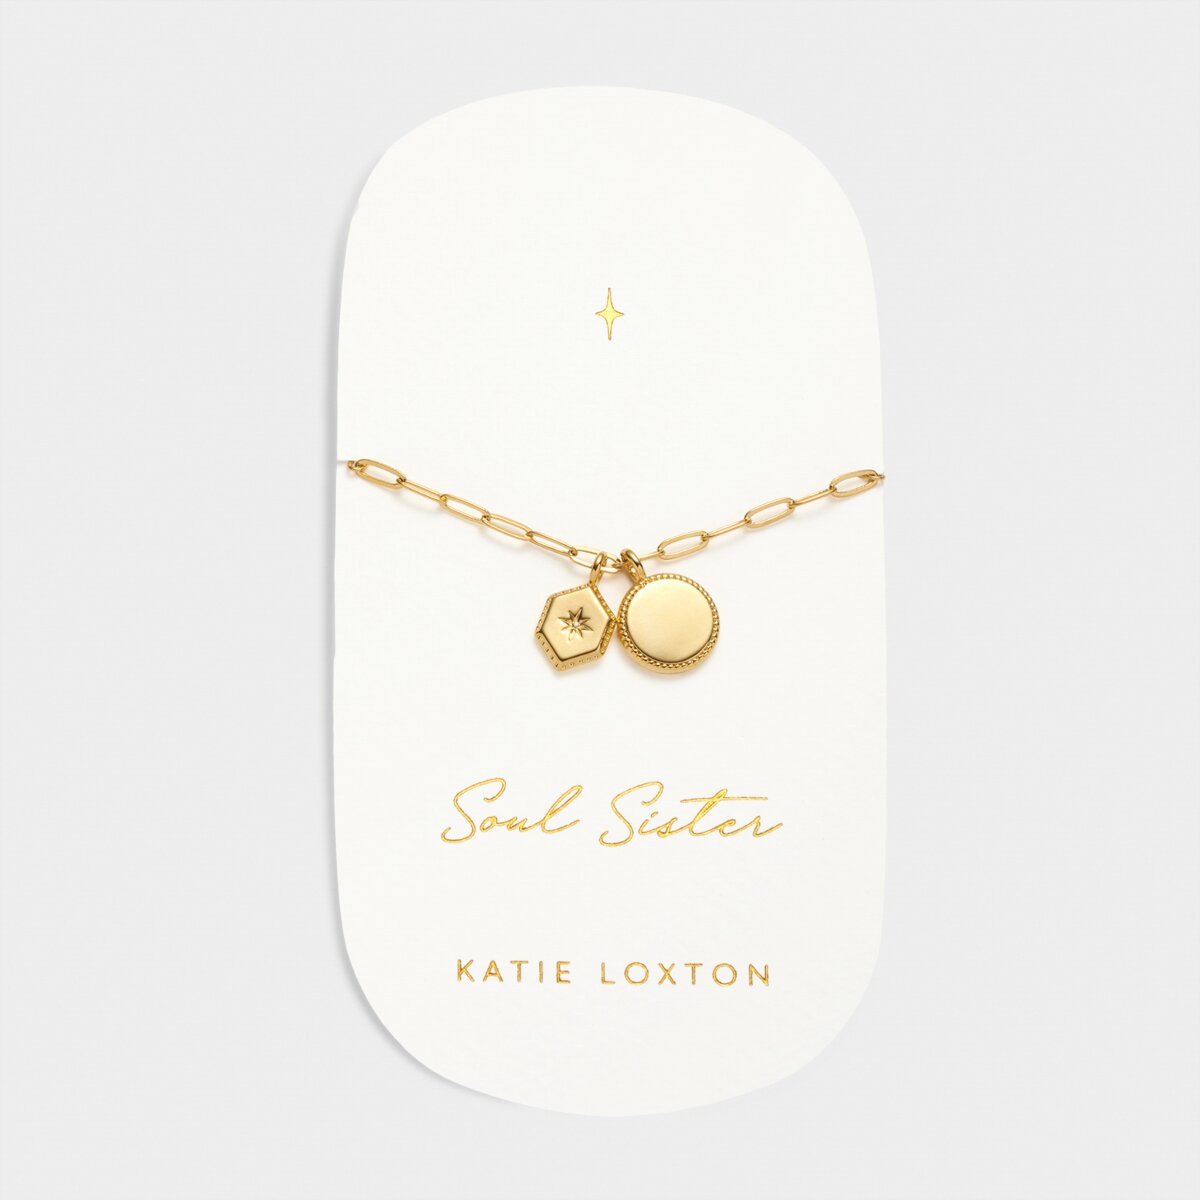 Katie Loxton | Soul Sister Waterproof Gold Charm Bracelet